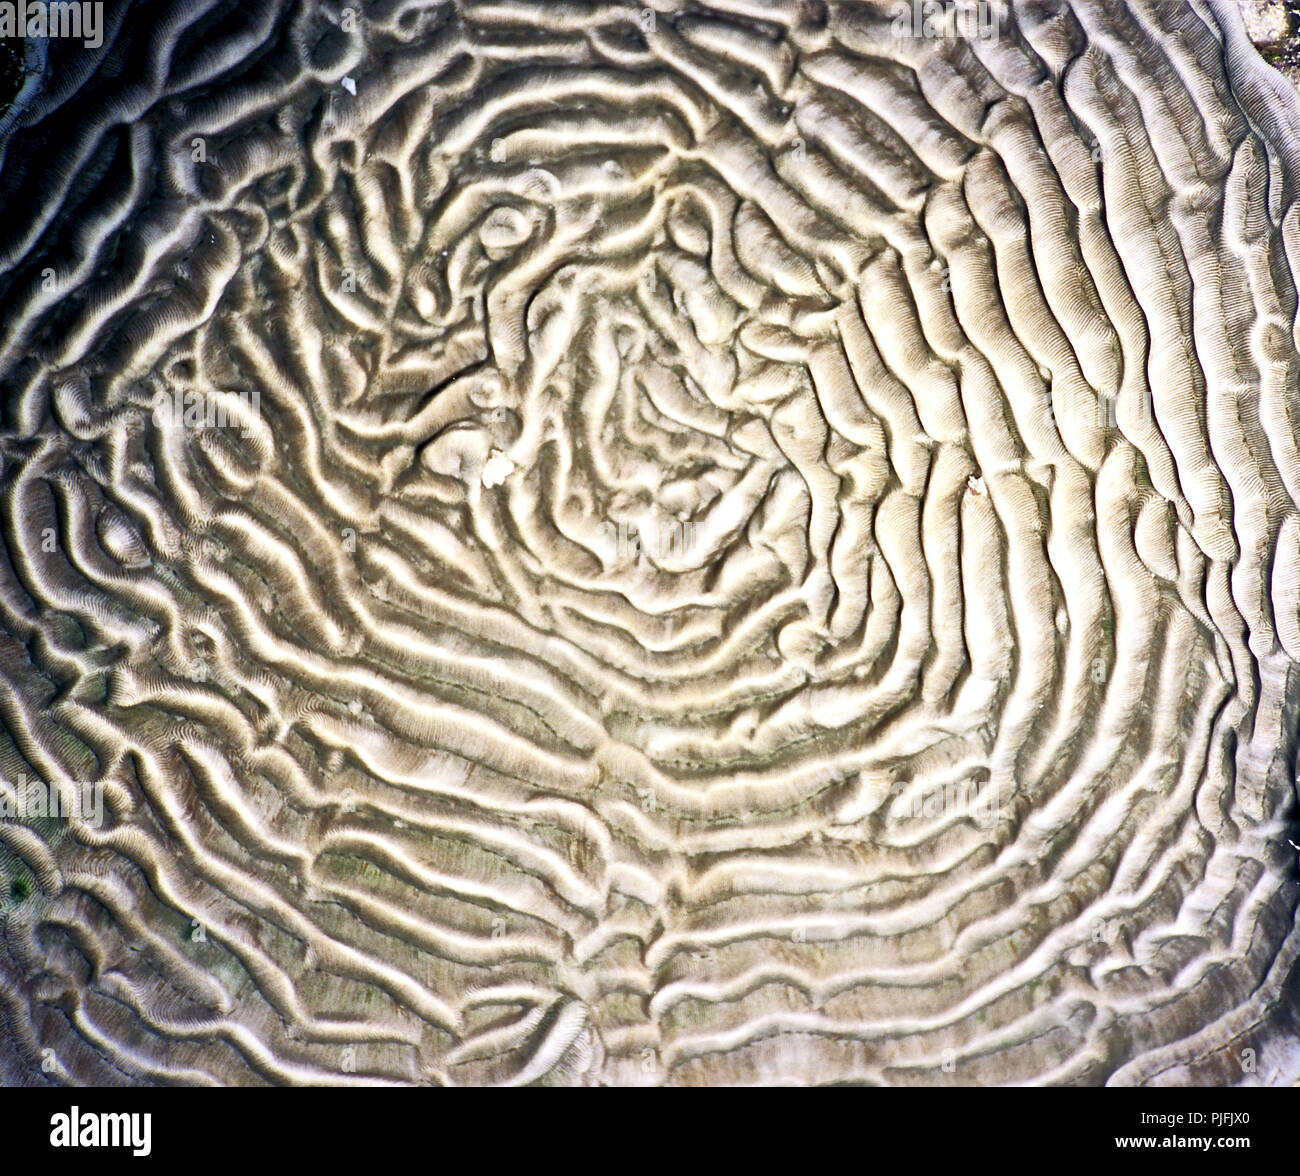 Questa è una specie di coralli duri (Platygyra lamellina: 100 cm.), che forma grandi massi rotondi - o piastre piane come in questo esempio. Il corallites sono lunghi e la forma a labirinto come linee sinuose, il cui aspetto dà luogo a suo nome comune del cervello di corallo. Esso ha una distribuzione diffusa nella regione Into-Pacific, solitamente sulle pendici delle barriere coralline e a una profondità non superiore a venti metri.La specie è sempre più rari, come risultato della degradazione generale delle barriere coralline a causa di cambiamenti climatici e l'acidificazione degli oceani. La Lista Rossa IUCN indica che è vicino a minacciati. Mar Rosso egiziano. Foto Stock